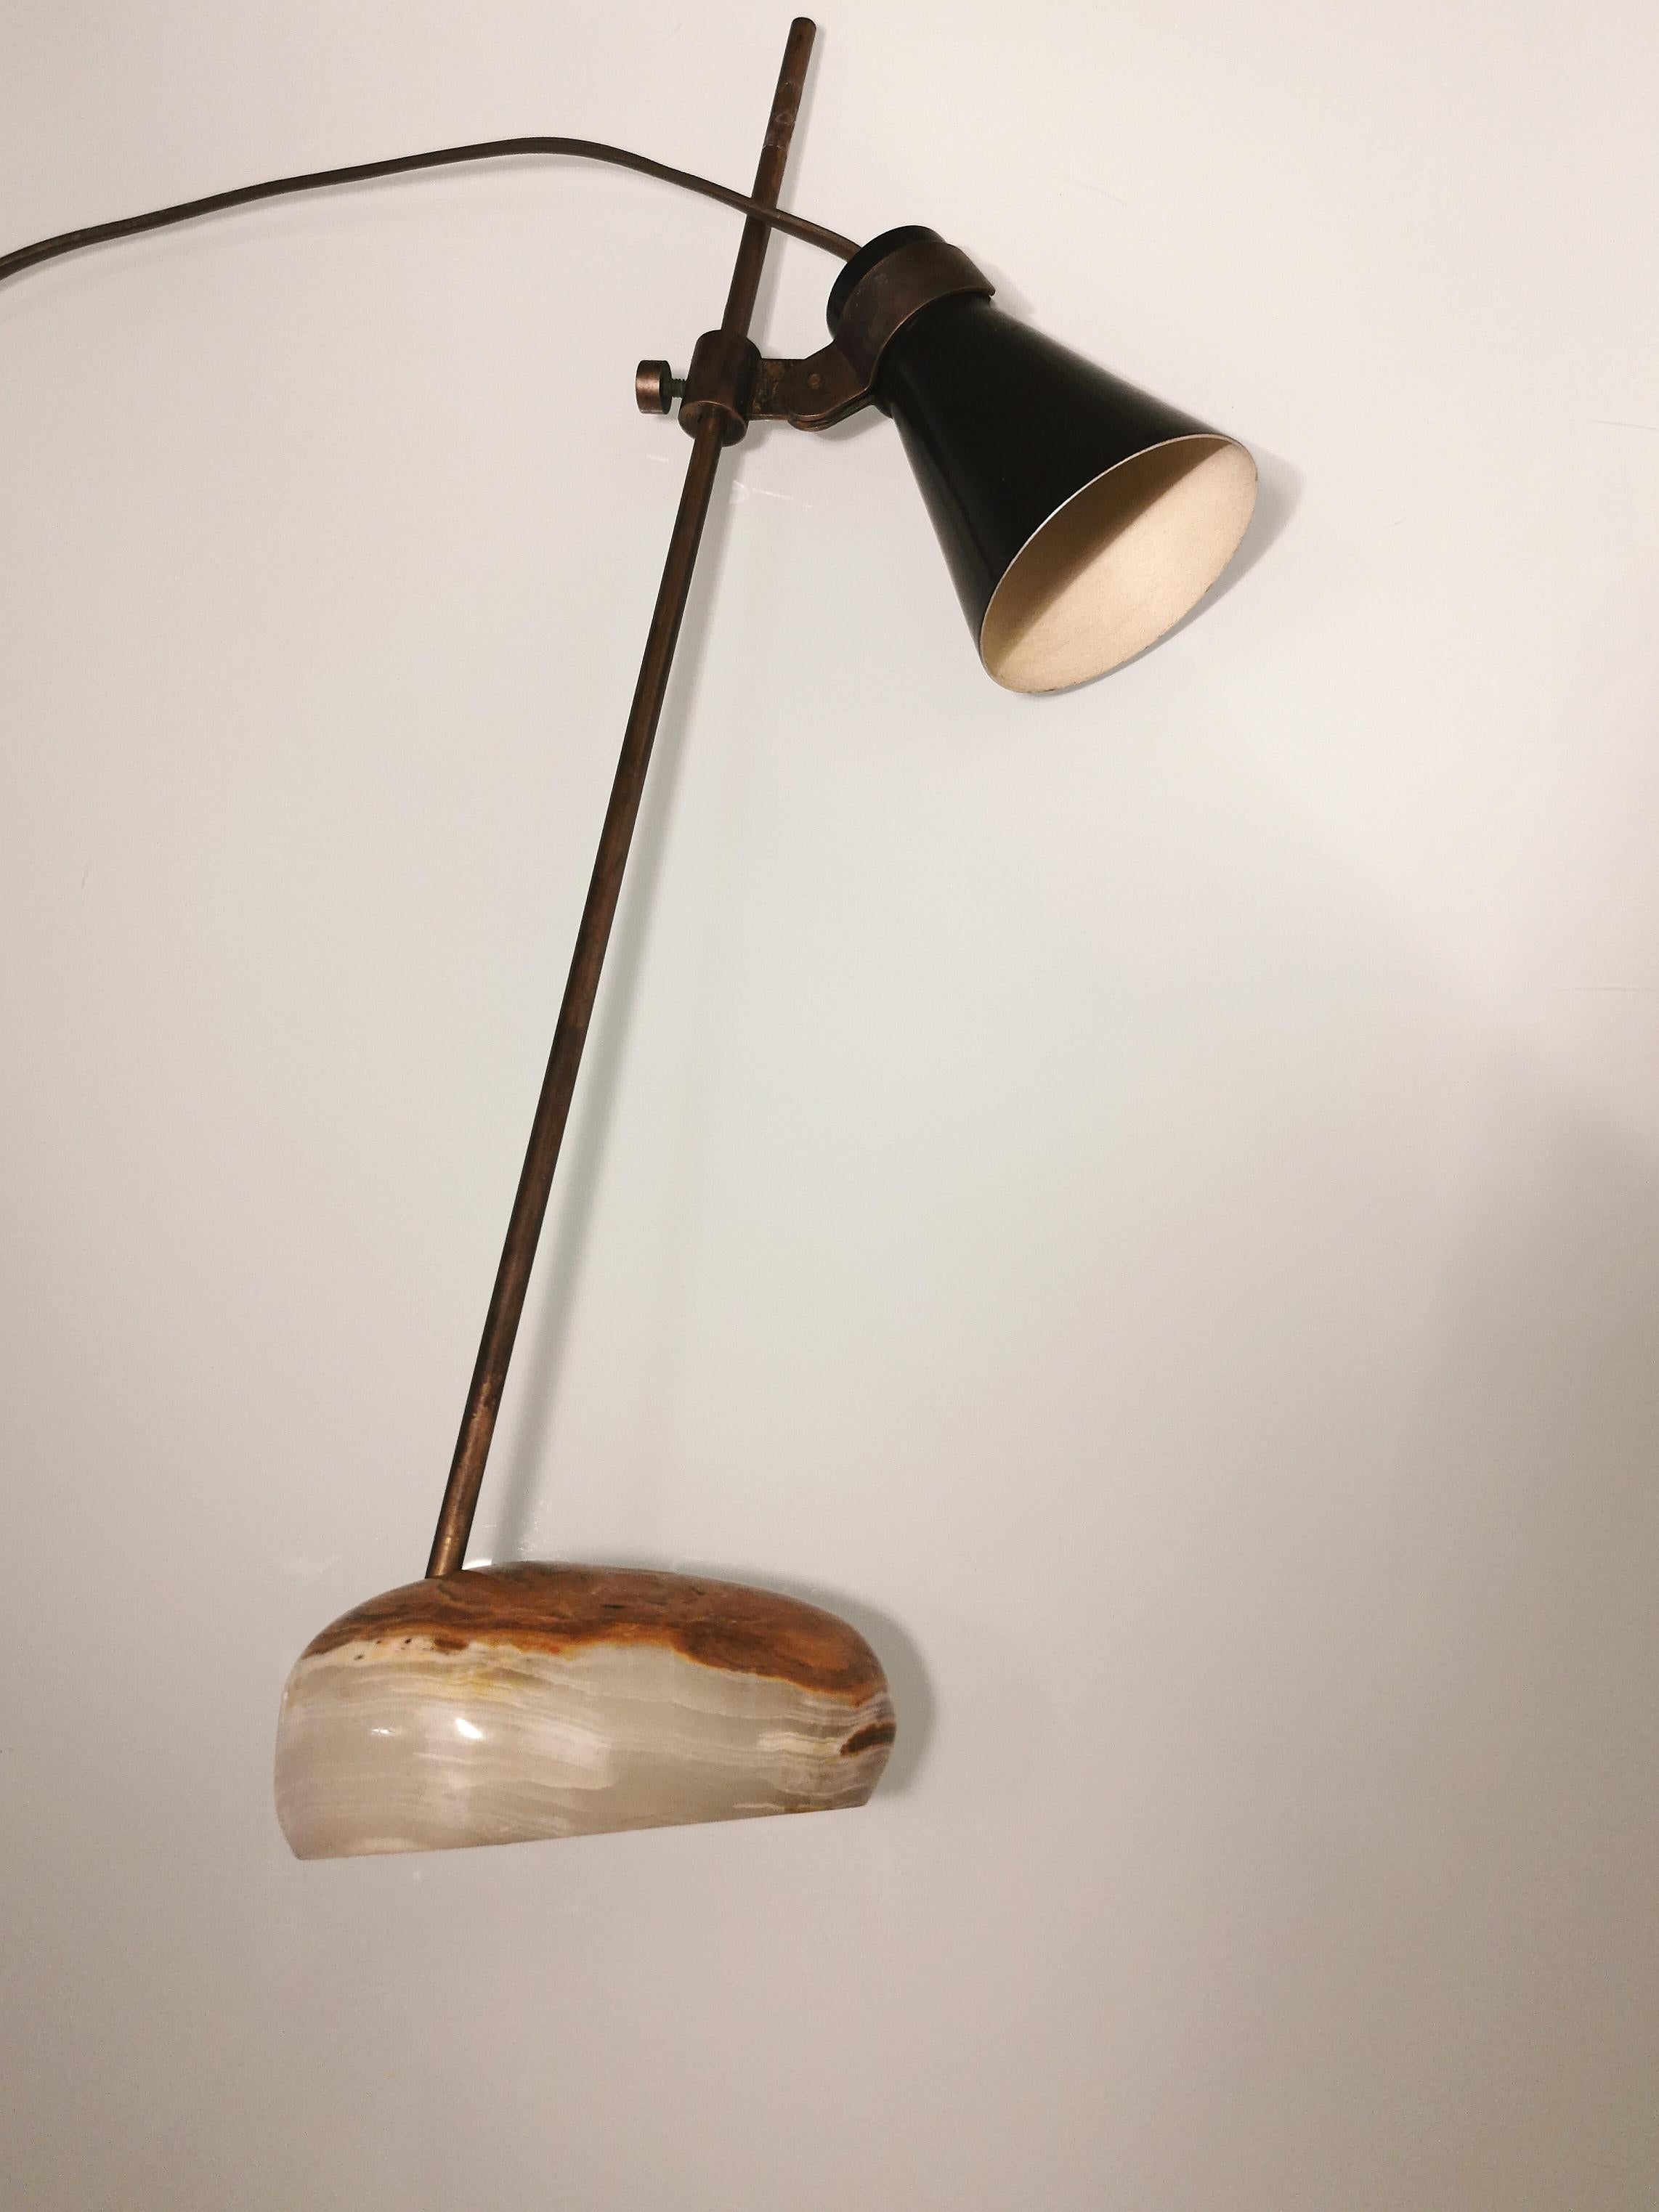 20th Century Midcentury Table Lamp Sasso by Luigi Caccia Dominioni in Brass, Aluminum, 1948